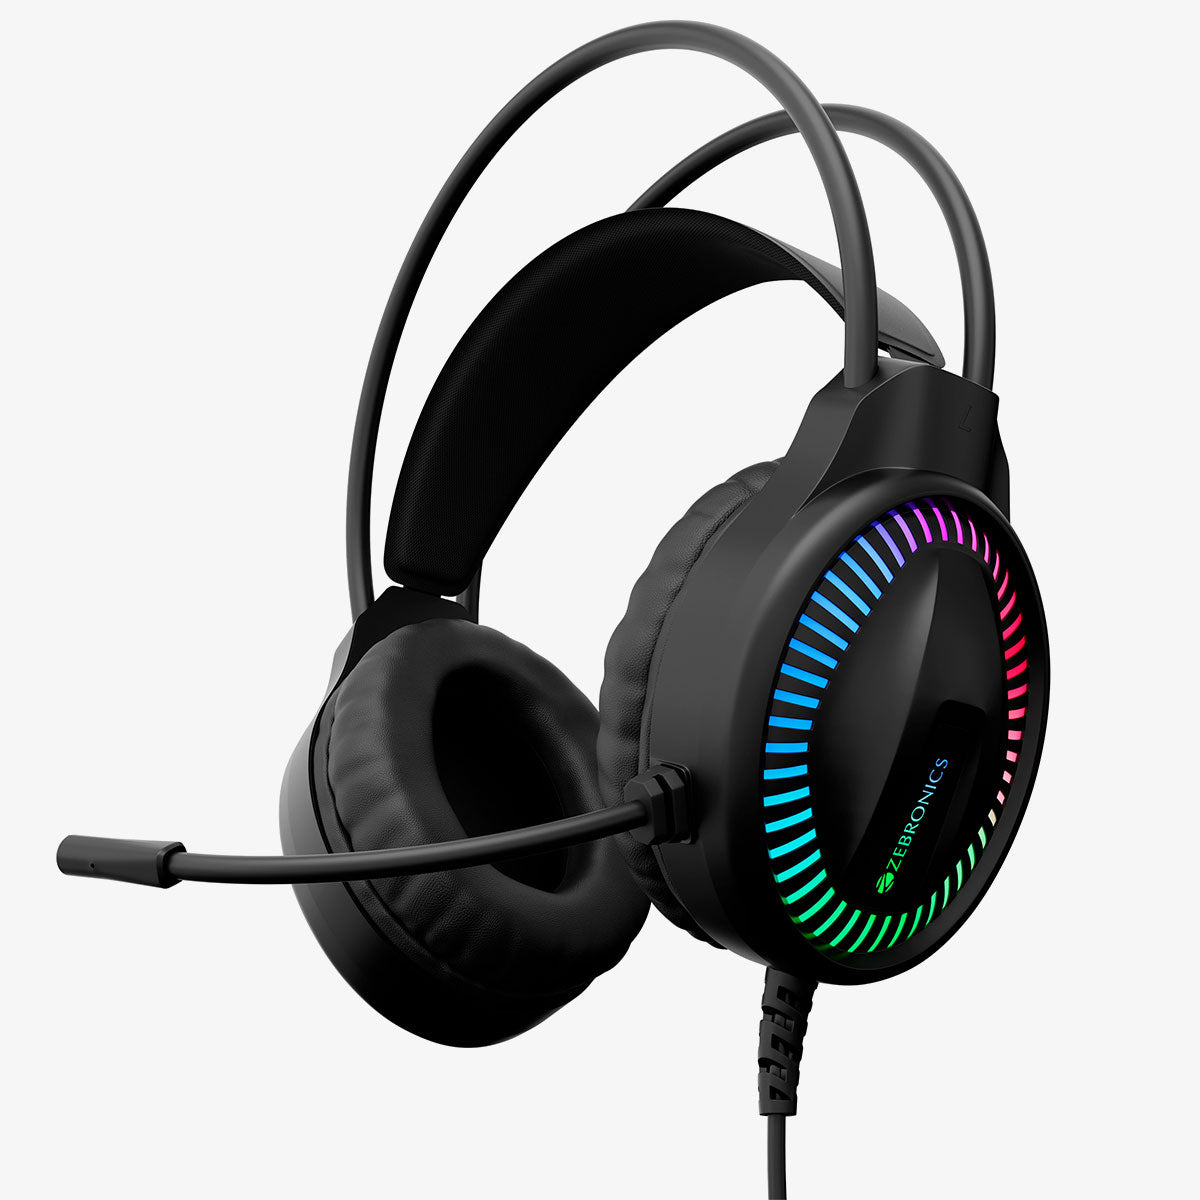 Blitz C Gaming Headphone (Type C Wired)